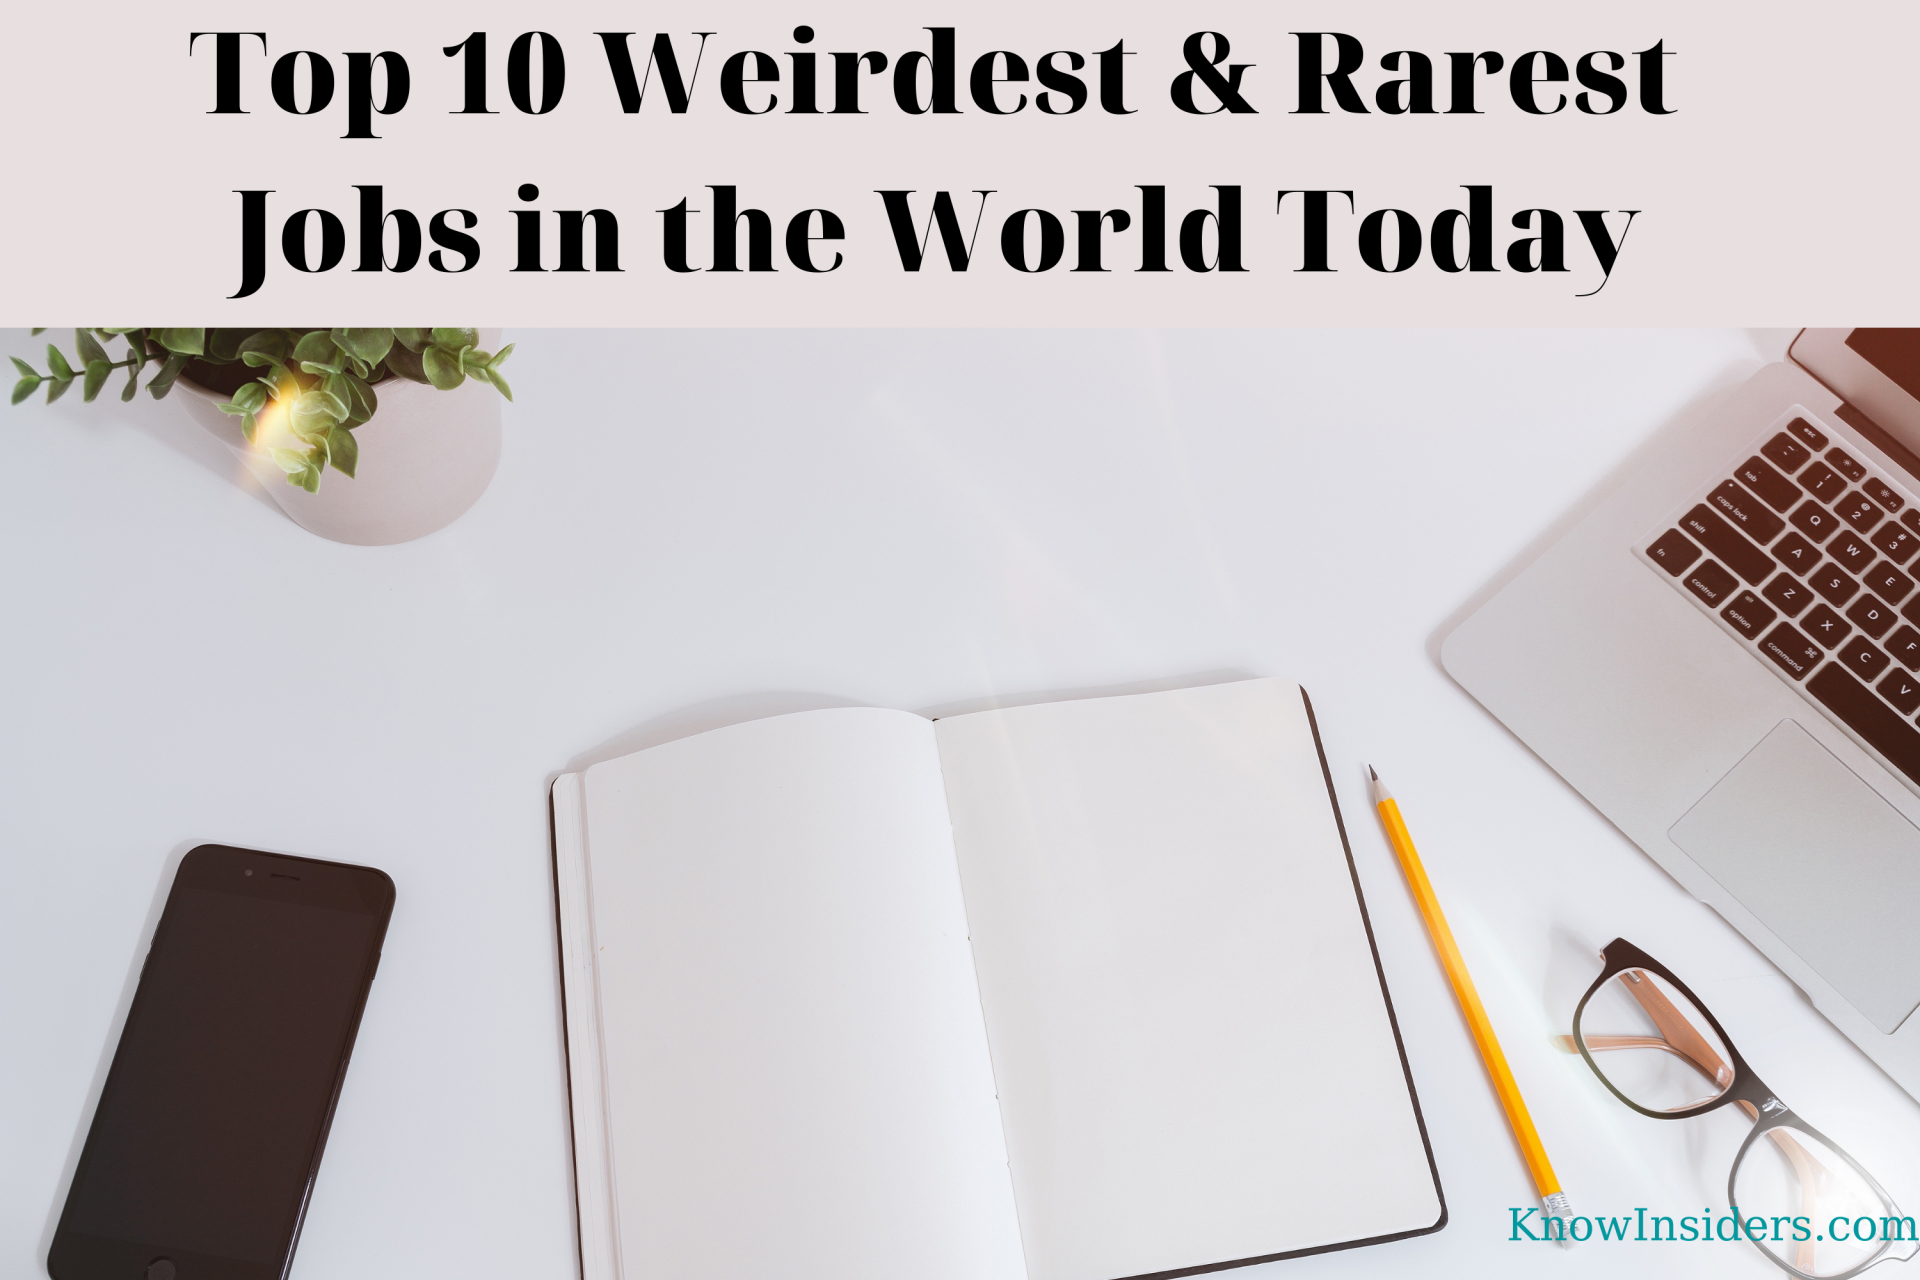 Top 10 Weirdest & Rarest Jobs In The World Today